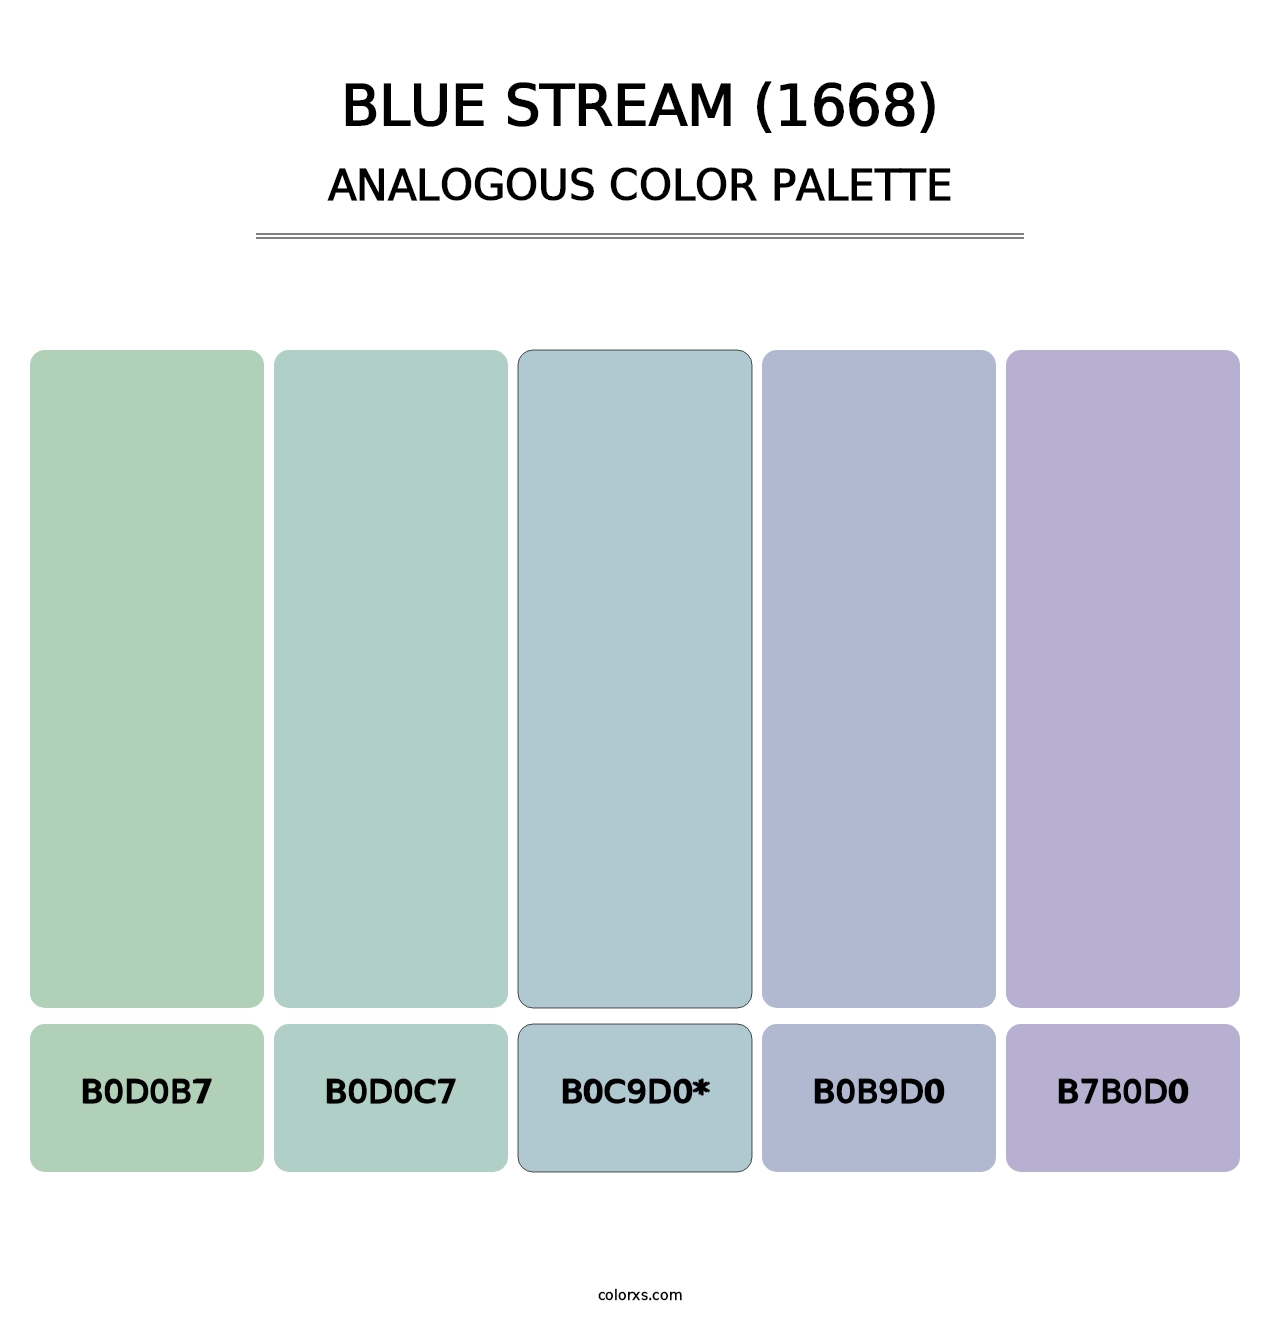 Blue Stream (1668) - Analogous Color Palette